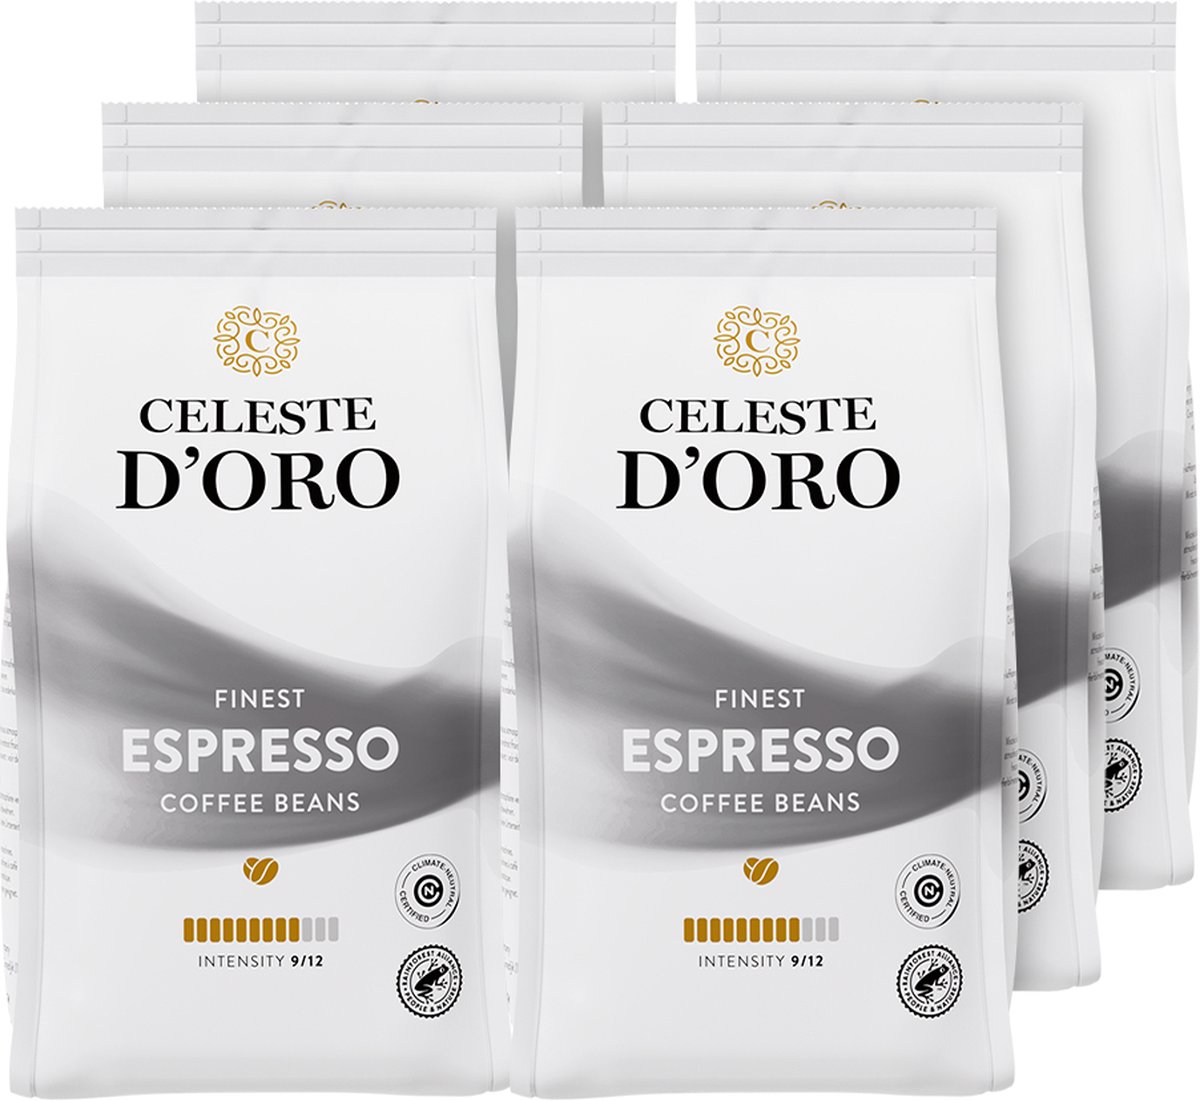 Celeste d’Oro - Finest Espresso - Koffiebonen - Espresso bonen - Arabica - 6 x 250g